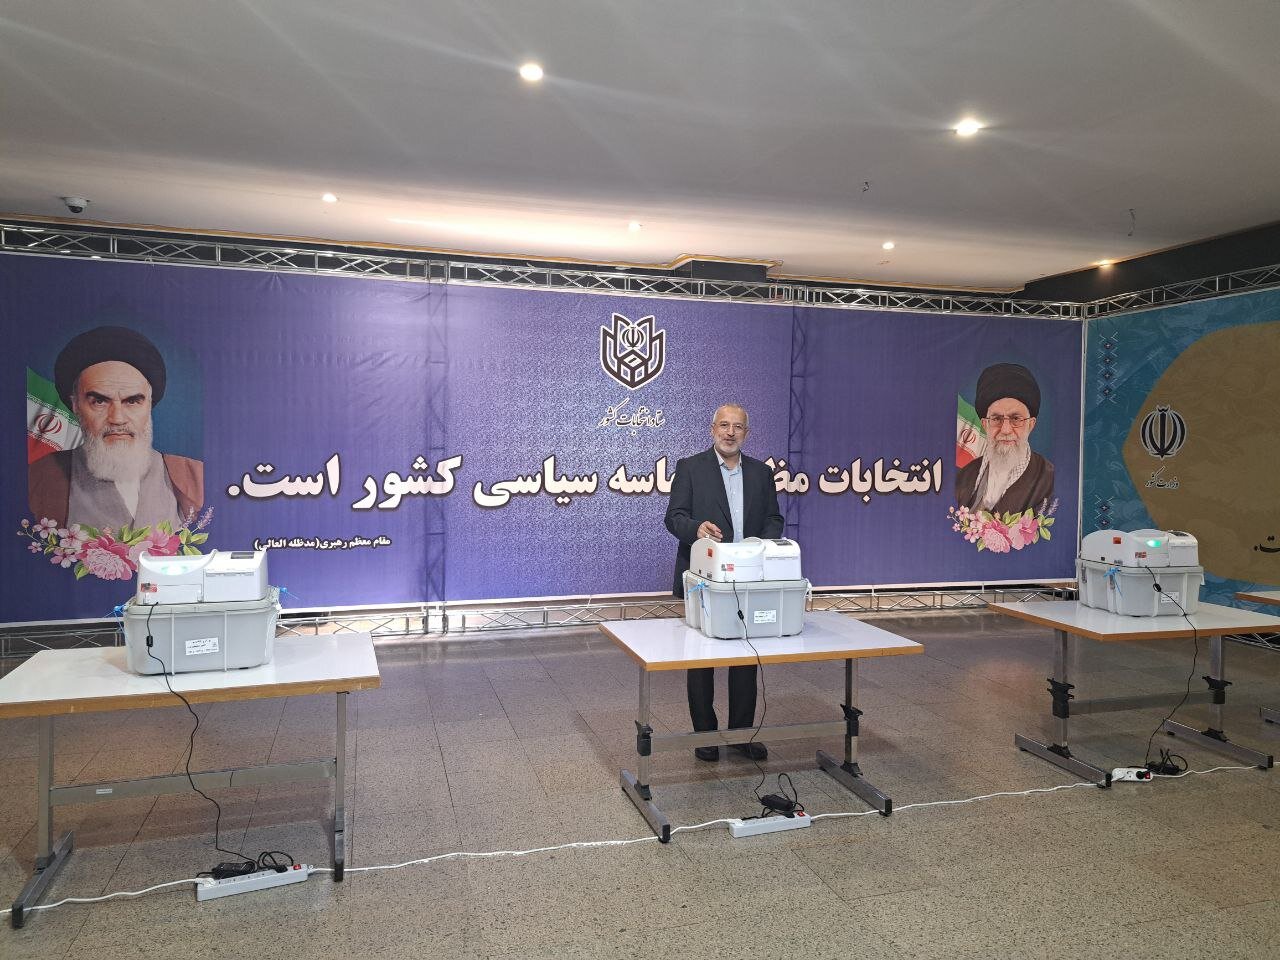 تصاویری از چند مقام دولتی پای صندوق رأی /اعضای شورای نگهبان به ستاد مرکزی نظارت بر انتخابات رفتند